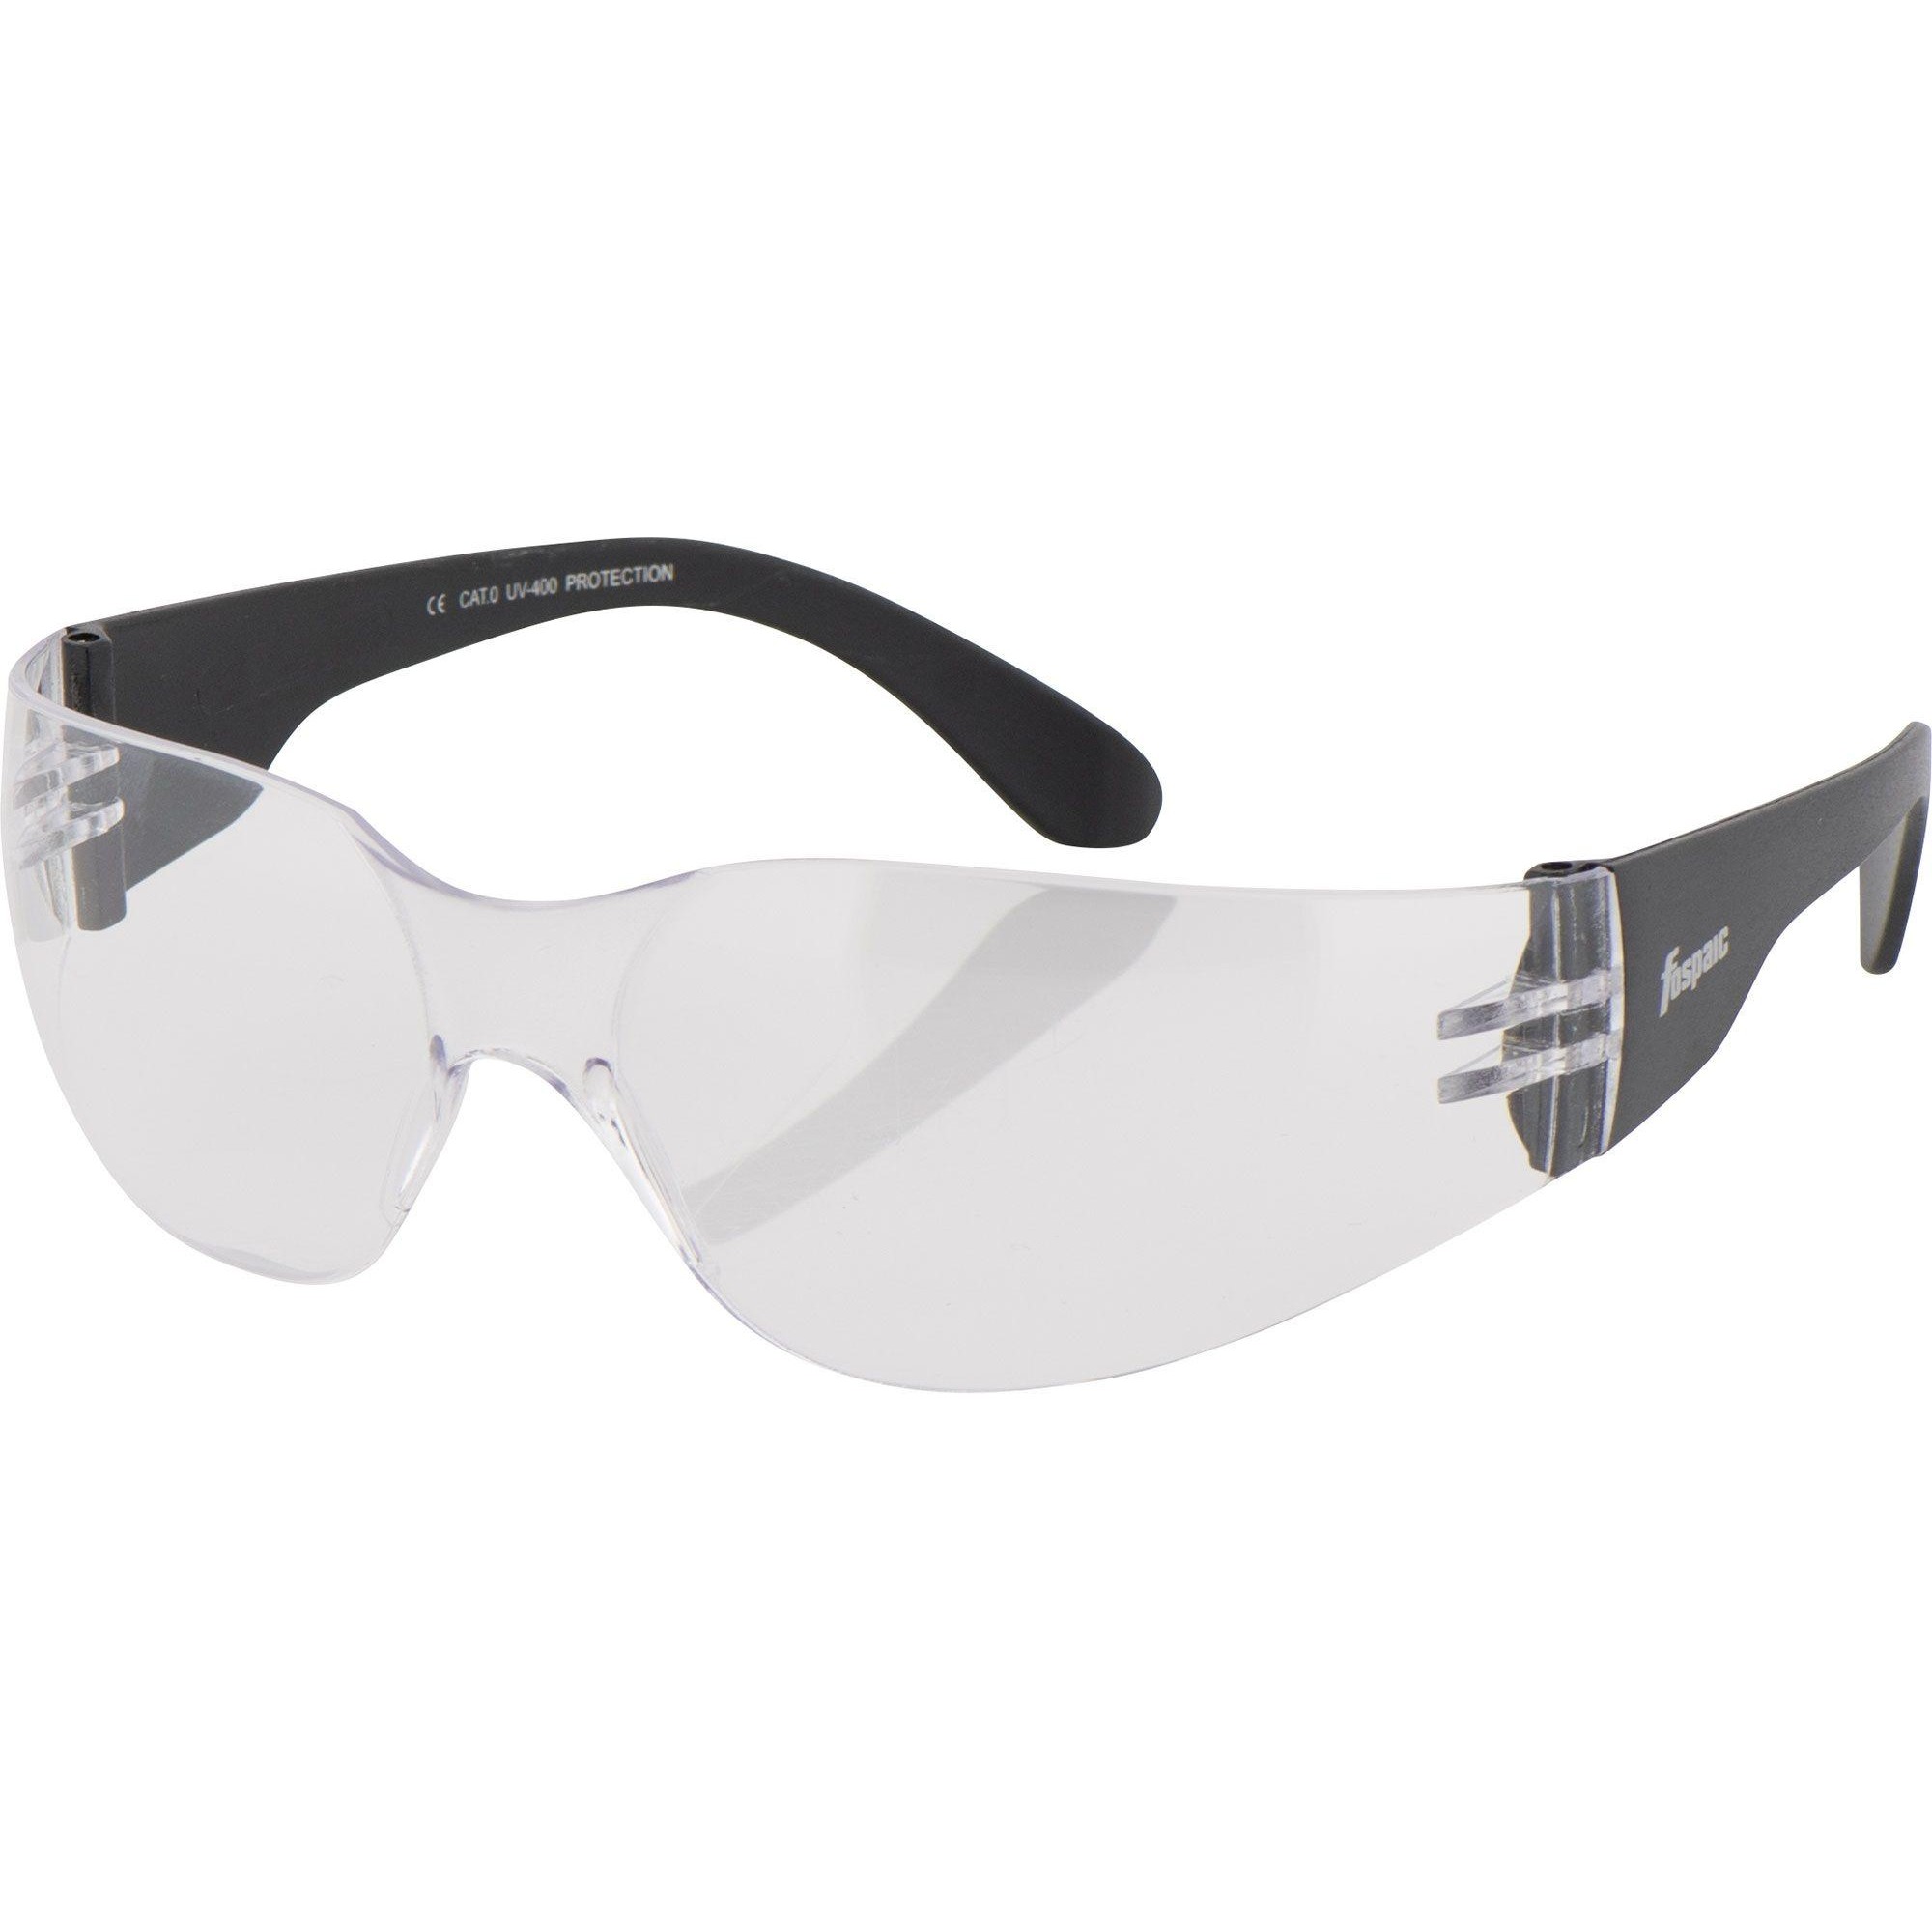 Okulary przeciwsłoneczne FOSPAIC TREND-LINE MODEL 27 dla motocyklisty